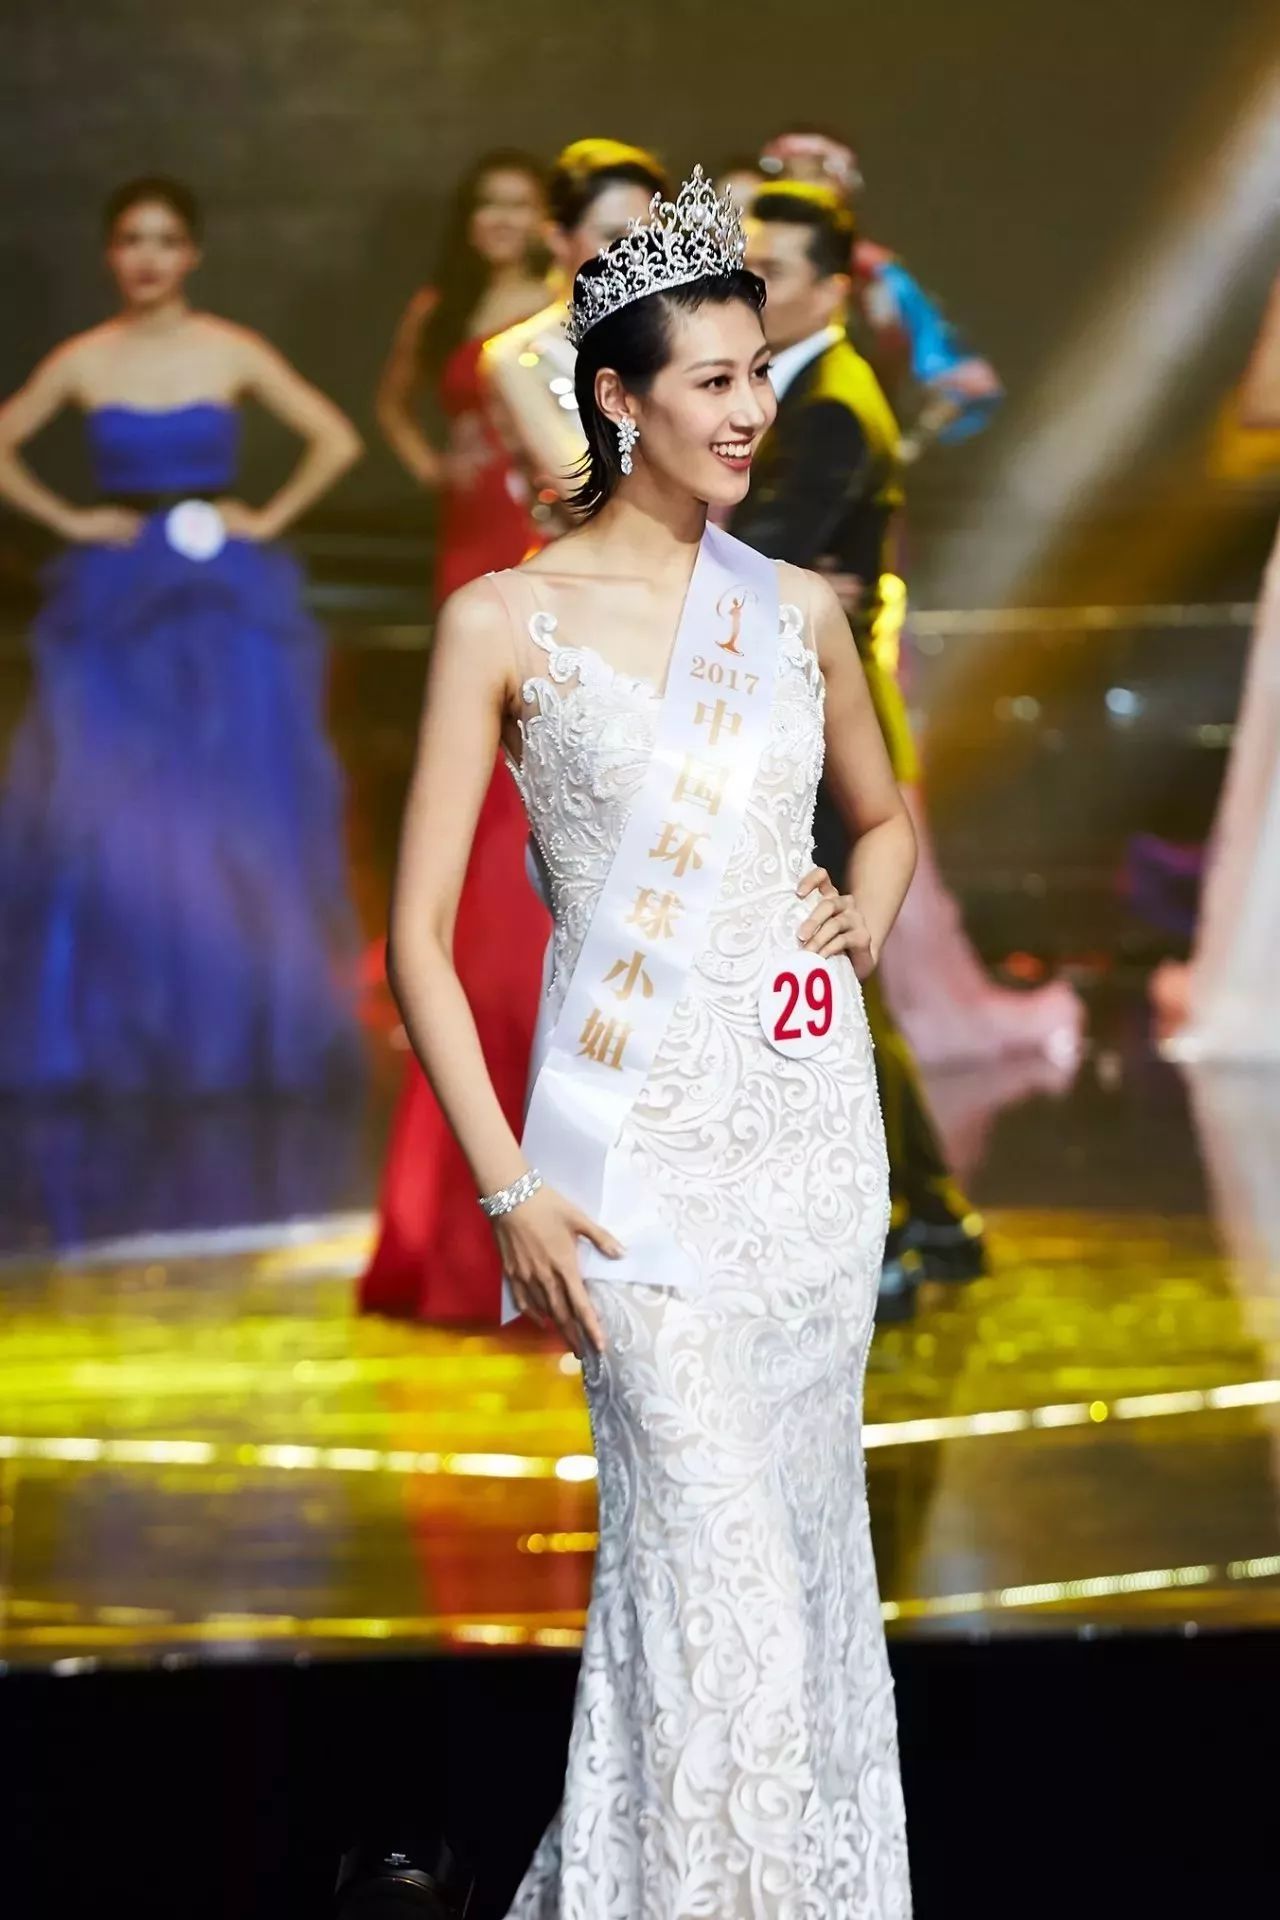 参加2017环球小姐全球总决赛 站上全球舞台 向全世界展现当代中国女性